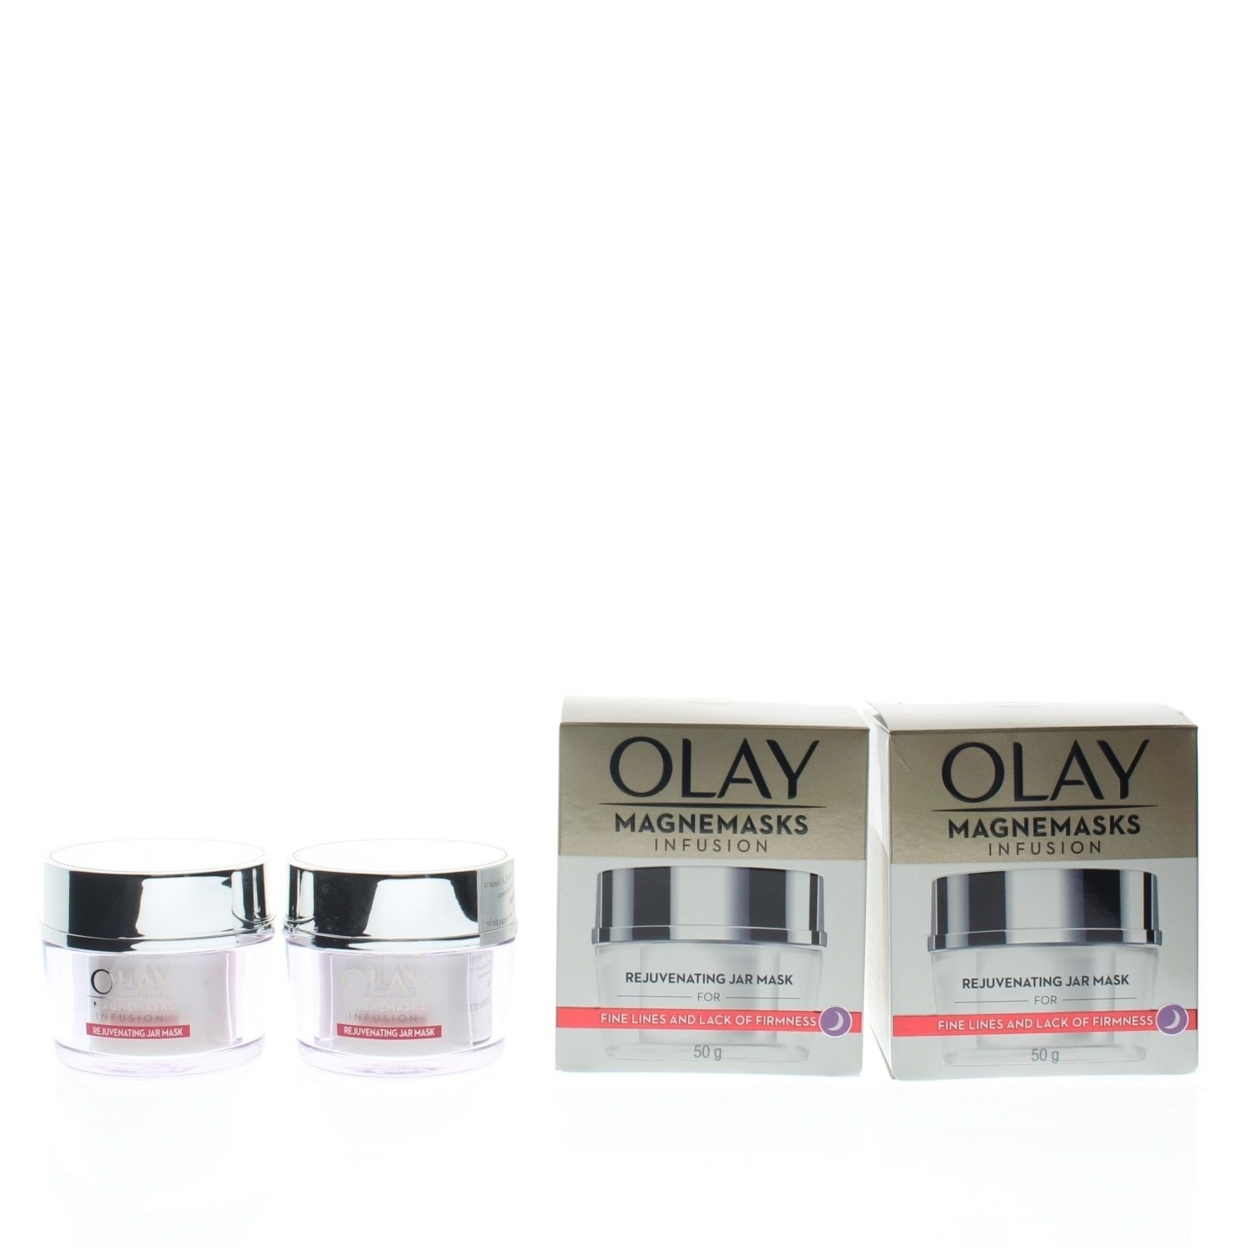 Olay Magnemasks Infusion Rejuvenating Jar Mask 50g (2 Pack)